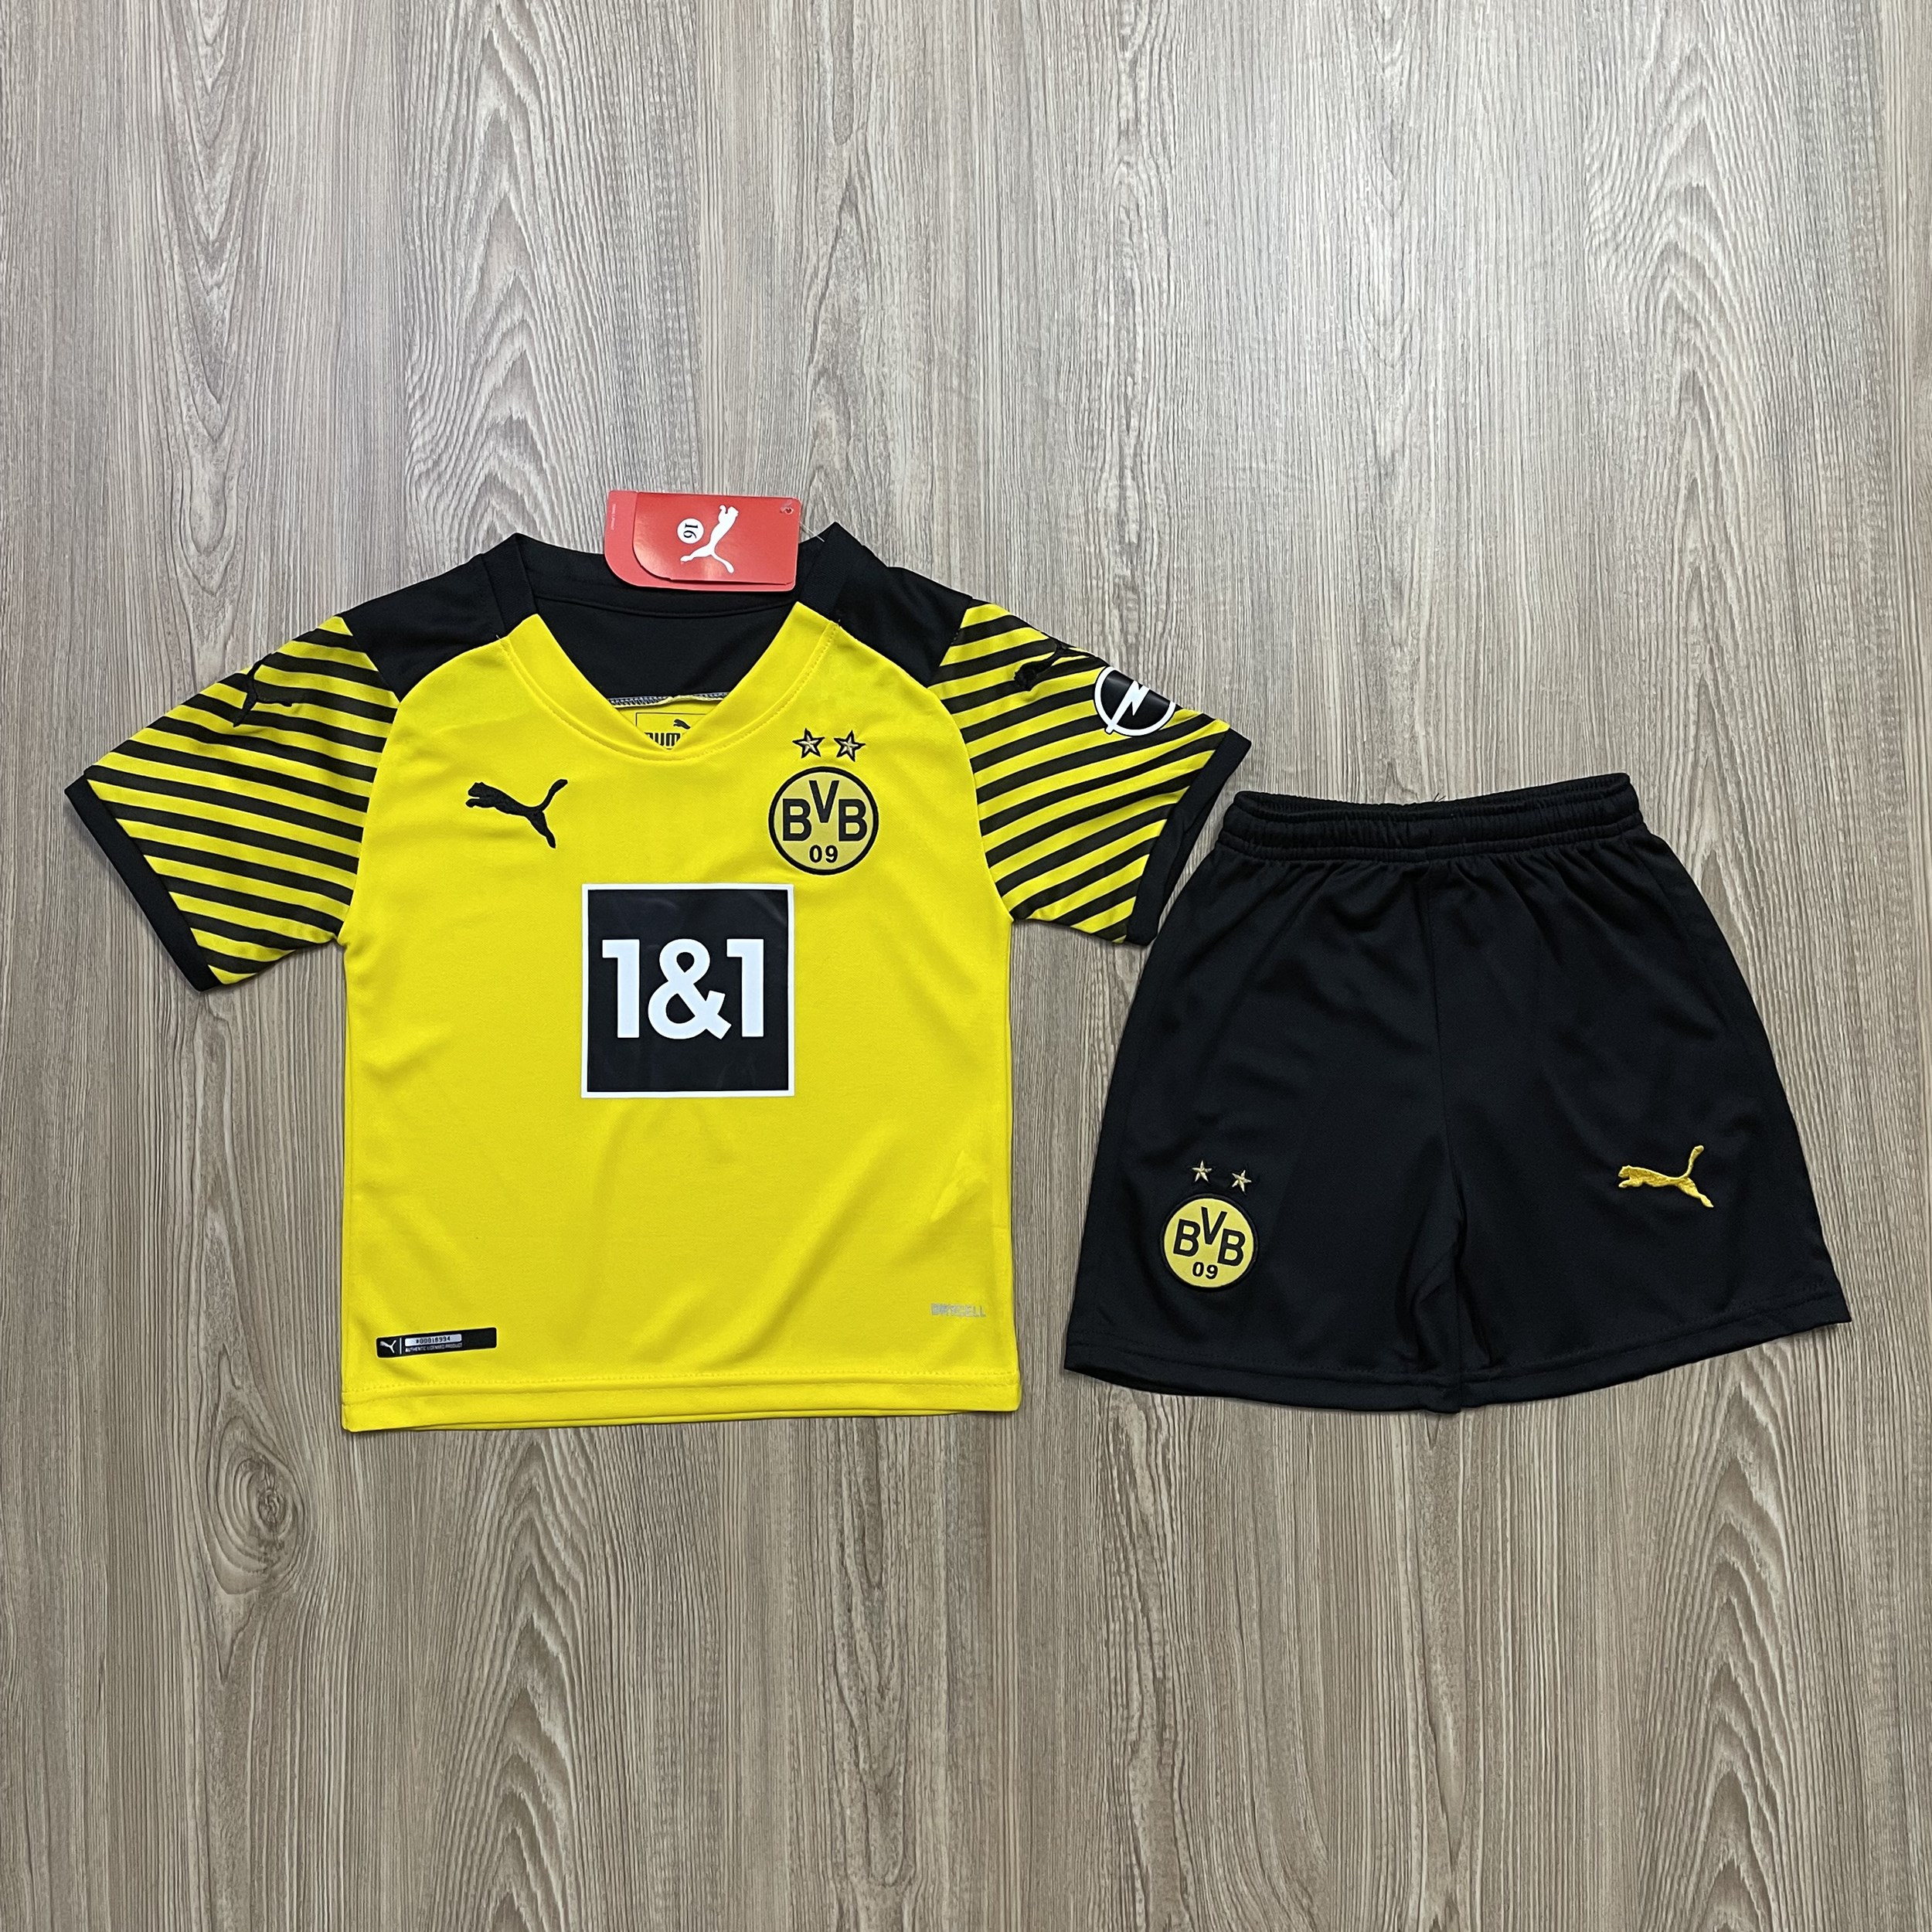 ชุดบอลเด็ก Dortmund ชุดกีฬาเด็กทีม เสื้อทีมเชลซี ซื้อครั้งเดียวได้ทั้งชุด (เสื้อ+กางเกง) ตัวเดียวในราคาส่ง สินค้าเกรด-A